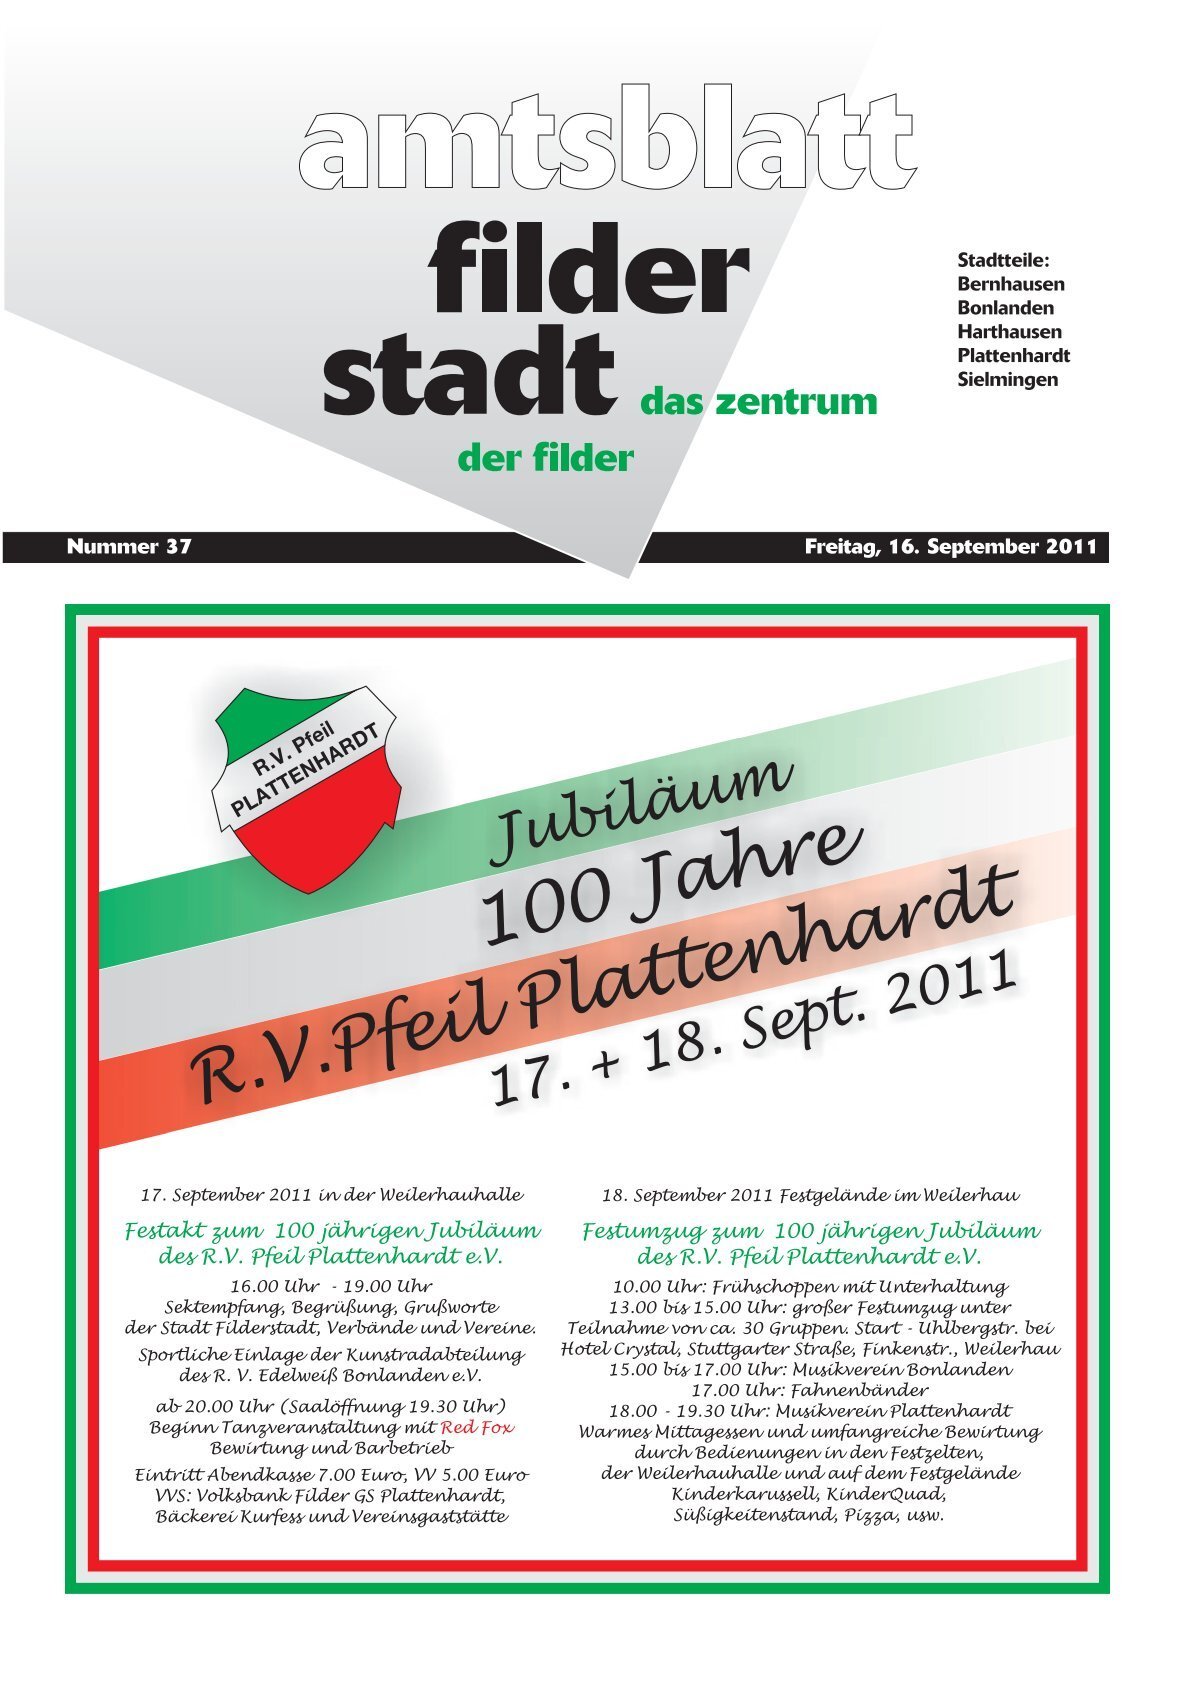 Publ filderstadt Issue kw37 Page 1 - Stadt Filderstadt